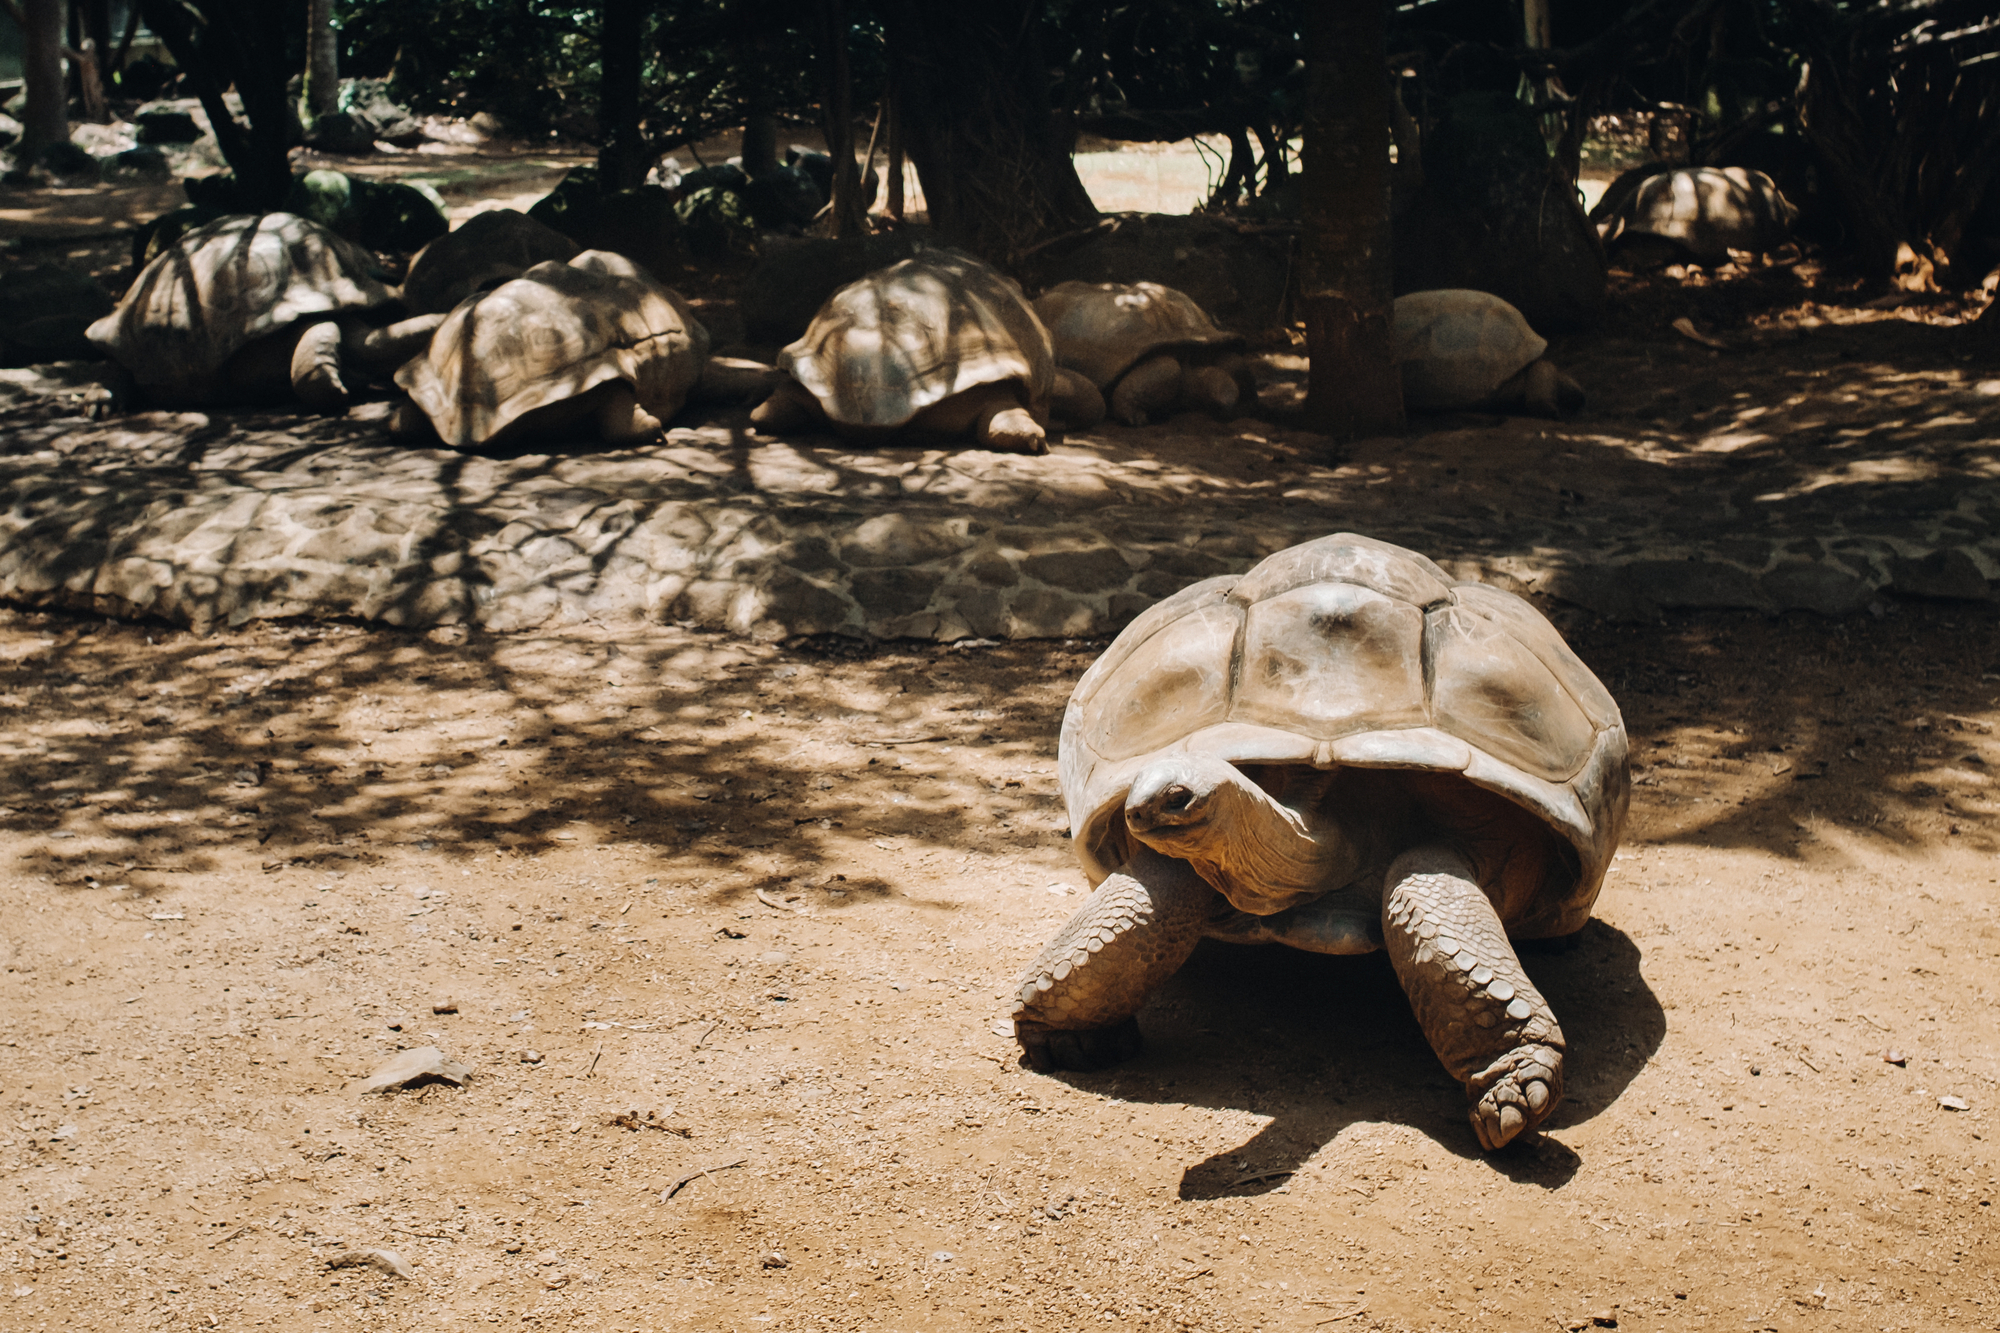 Giant tortoises in National Botanical Gardens